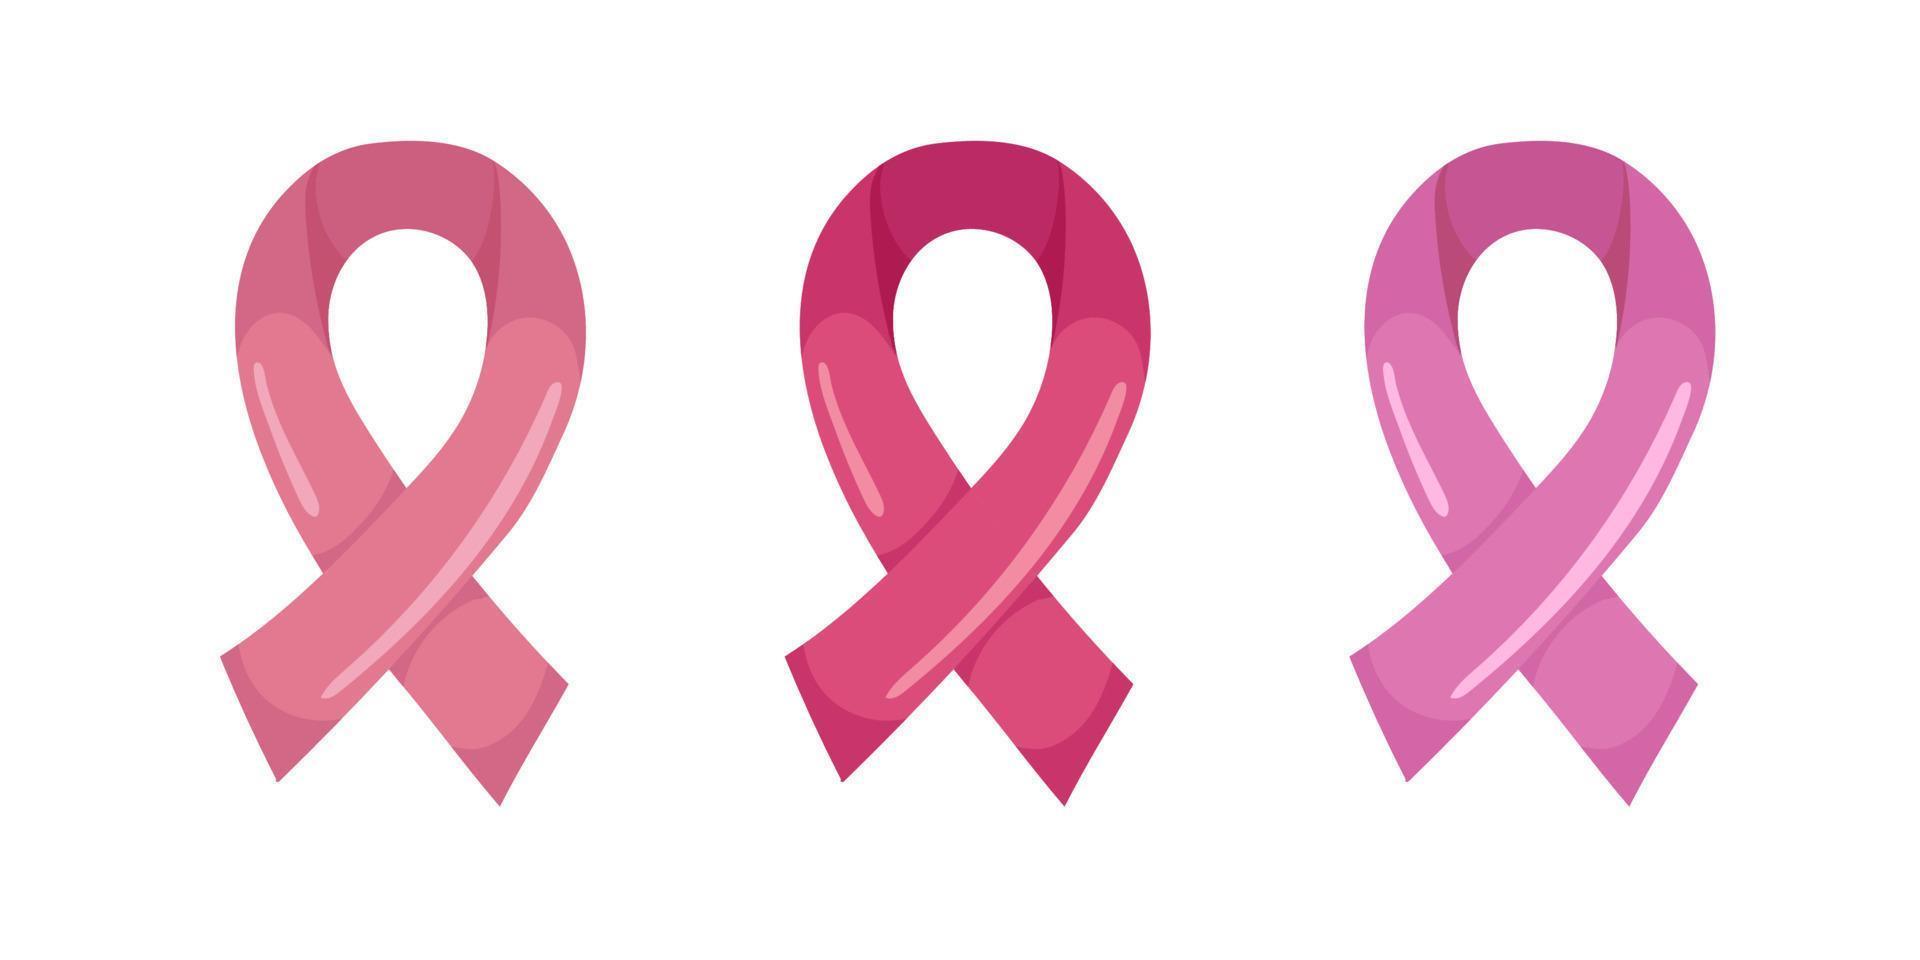 rosa band av tre olika nyanser av rosa. symbol för oktober bröstcancer medvetenhet månad, tecknad stil. vektor illustration isolerade på vitt